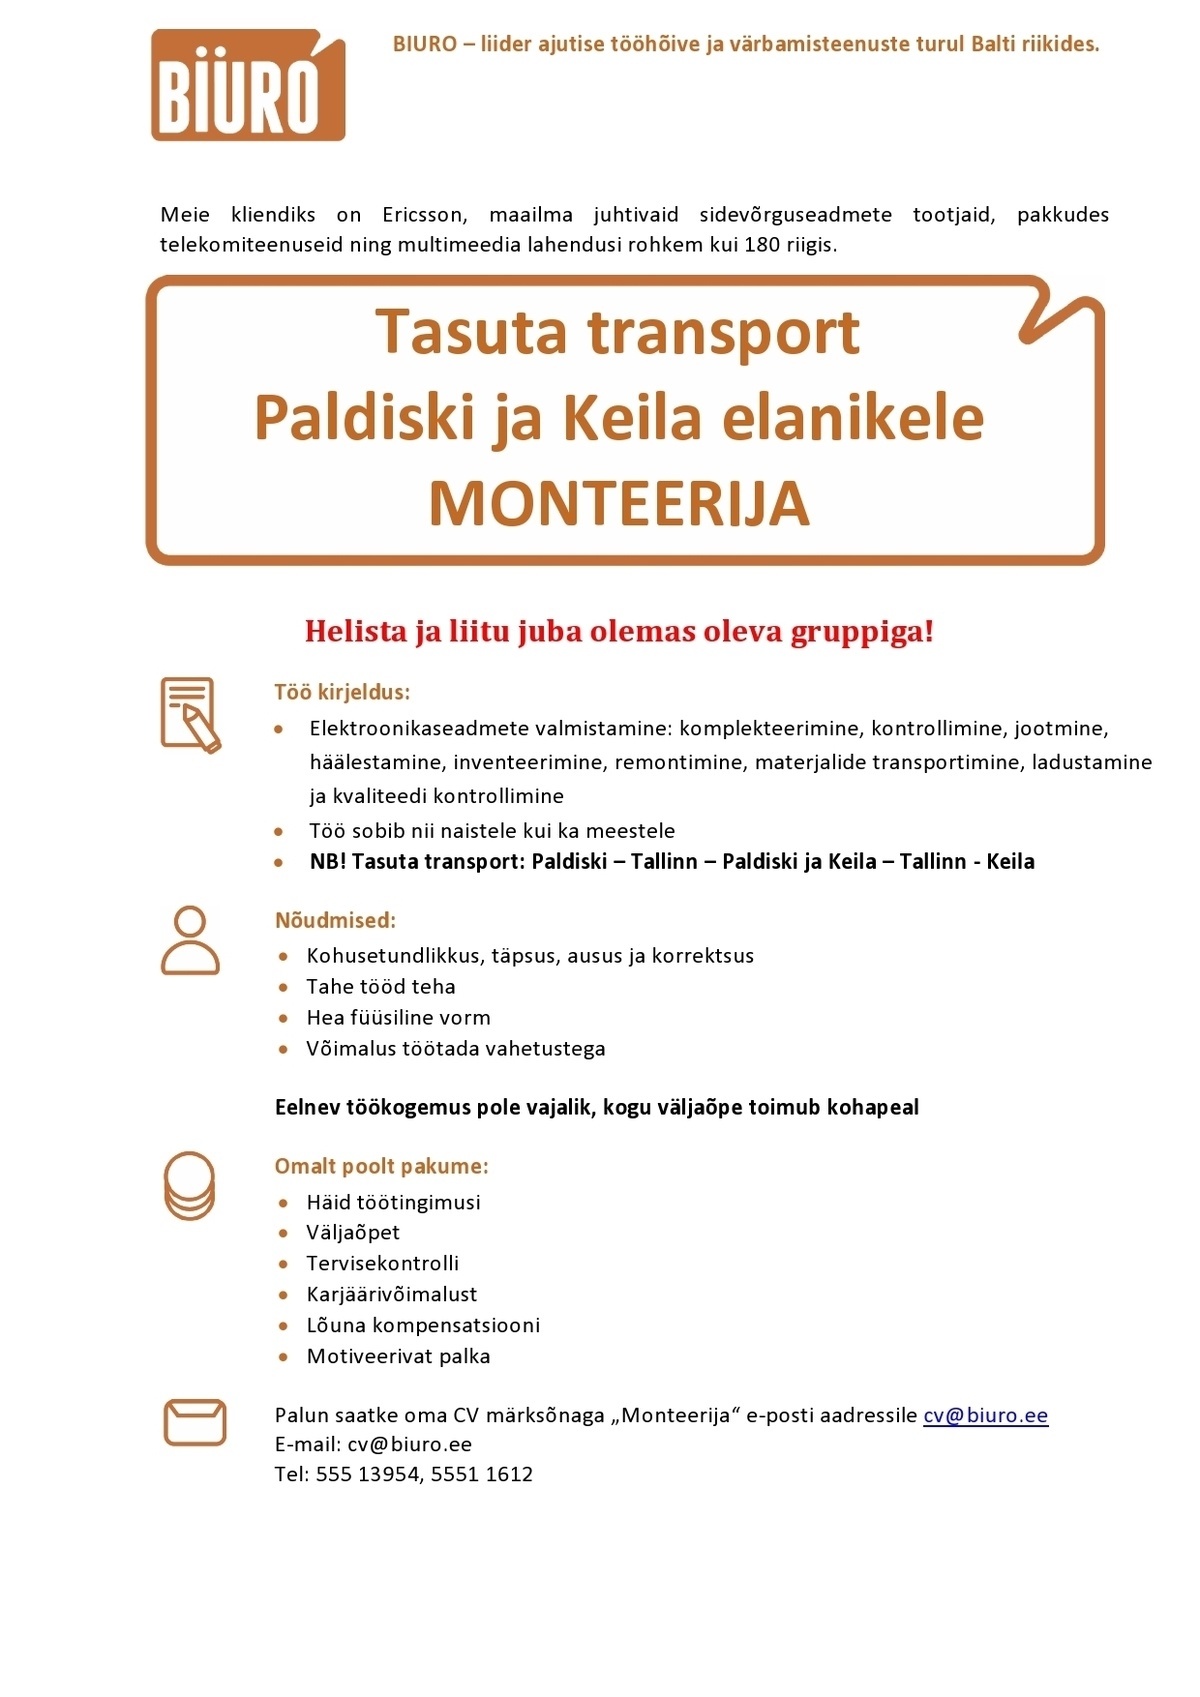 Biuro OÜ Monteerija (Tasuta transport Paldiskist ja Keilast)